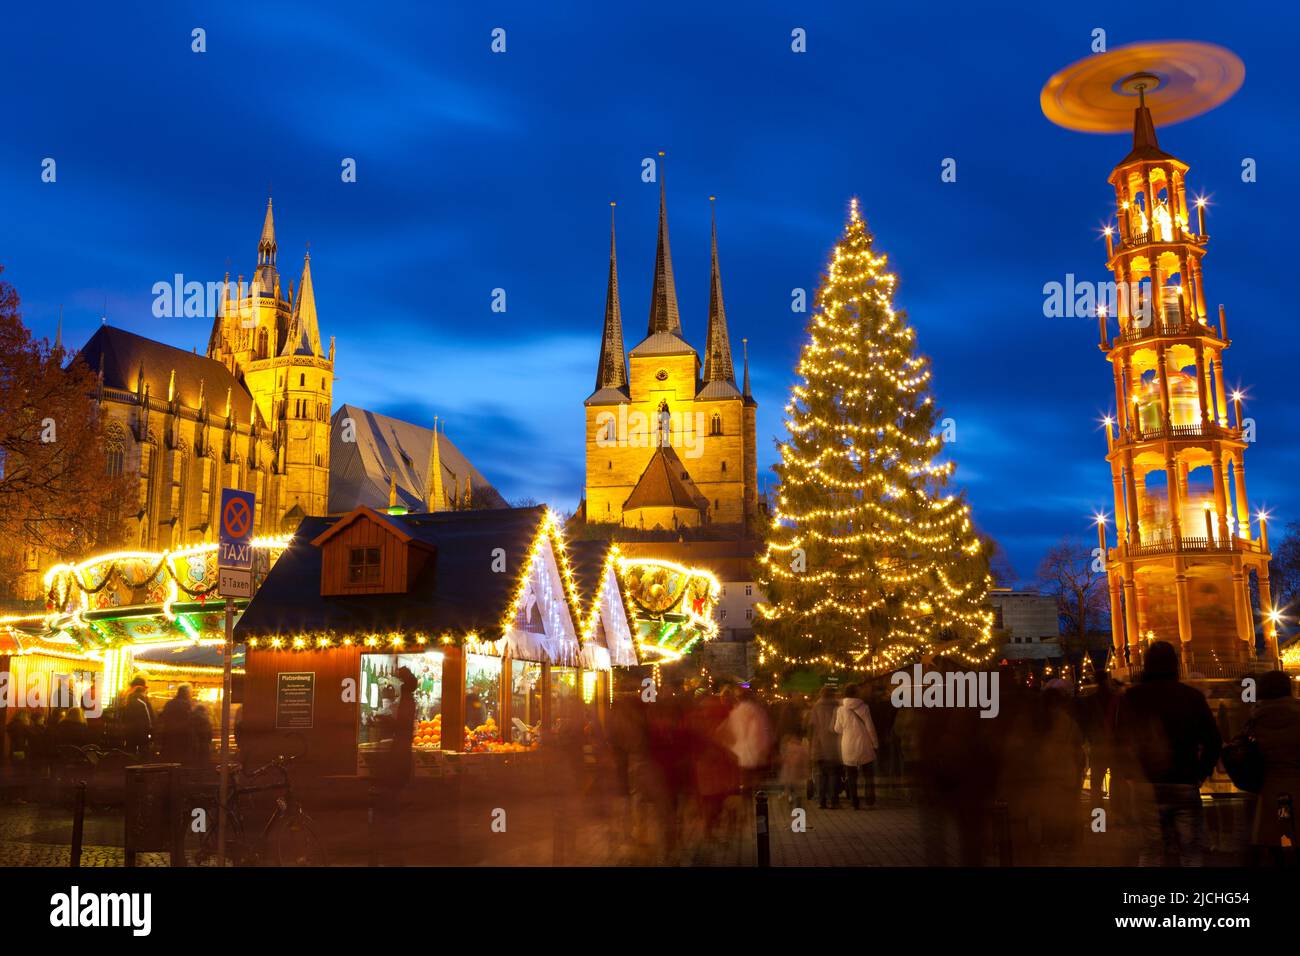 Marché de Noël avec la cathédrale Saint-Marien et l'église Saint-Severus en arrière-plan, Erfurt, Thuringe, Allemagne Banque D'Images